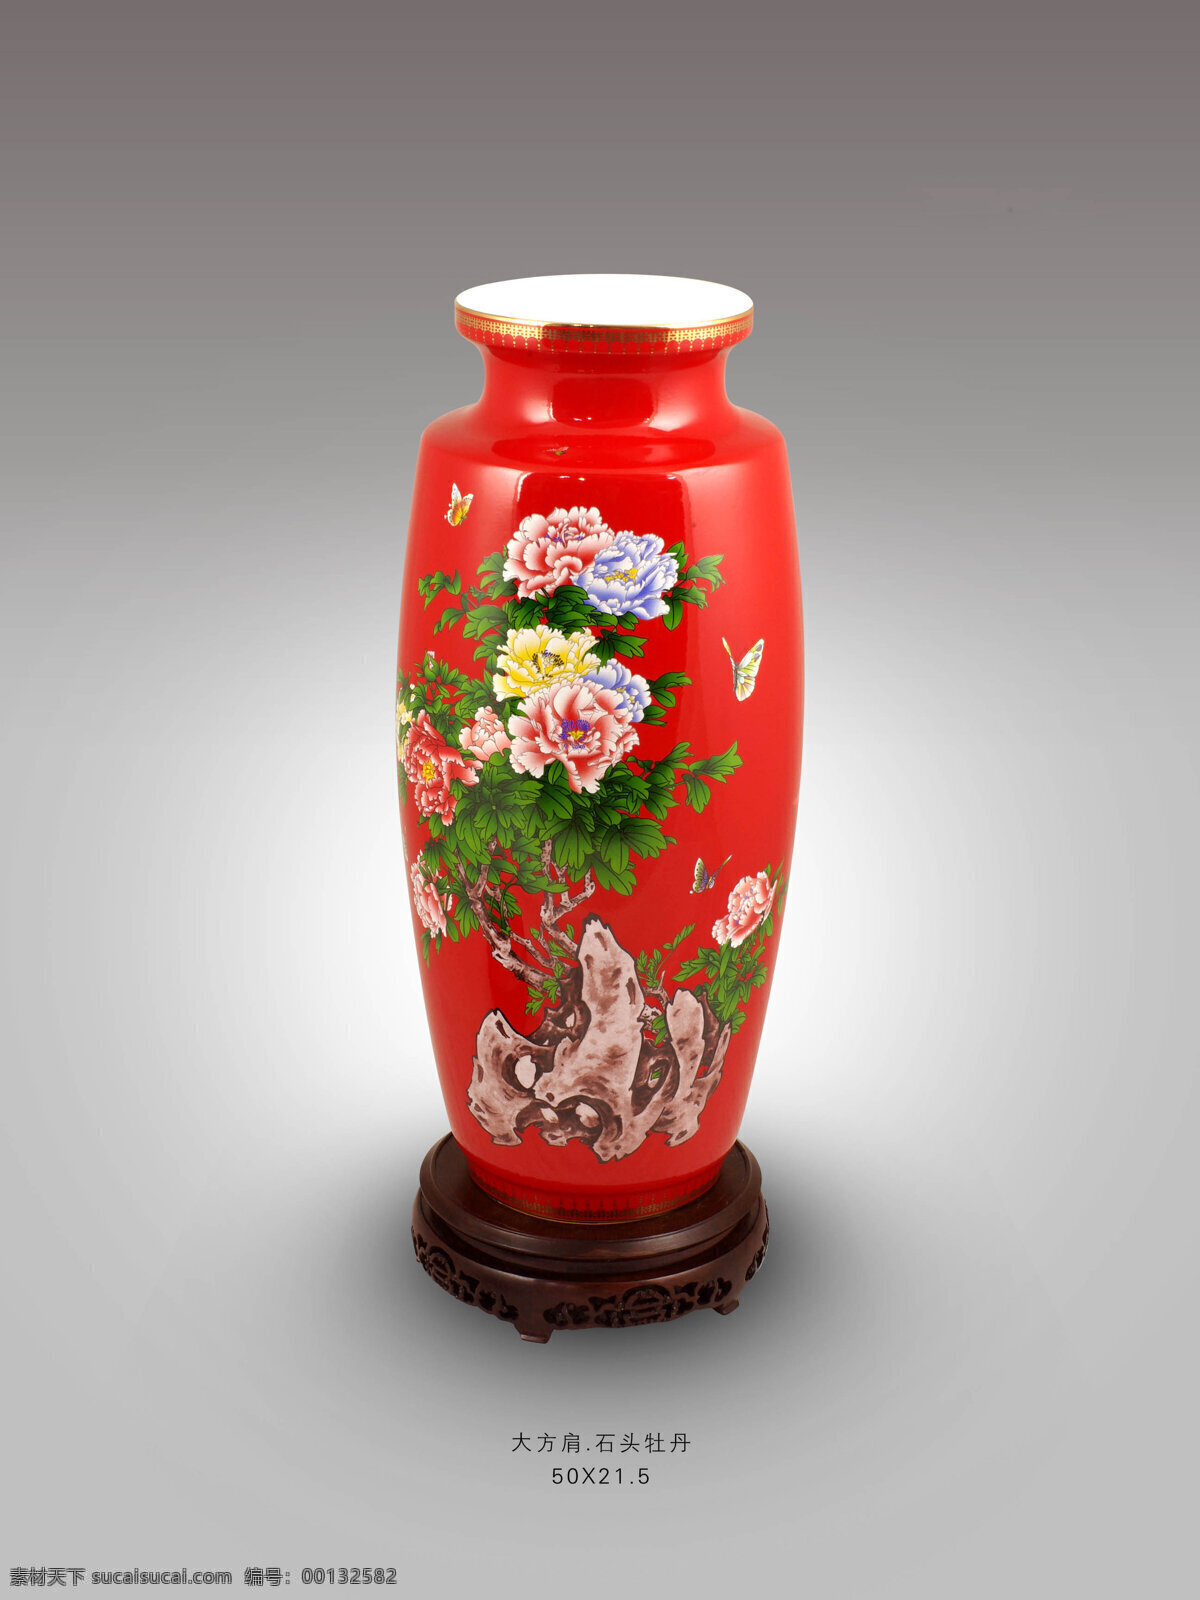 红瓷花瓶系列 大方肩瓶 花开富贵 红瓷 花瓶 礼品 定制 厂家 湖南醴陵 祥龙窑 文化艺术